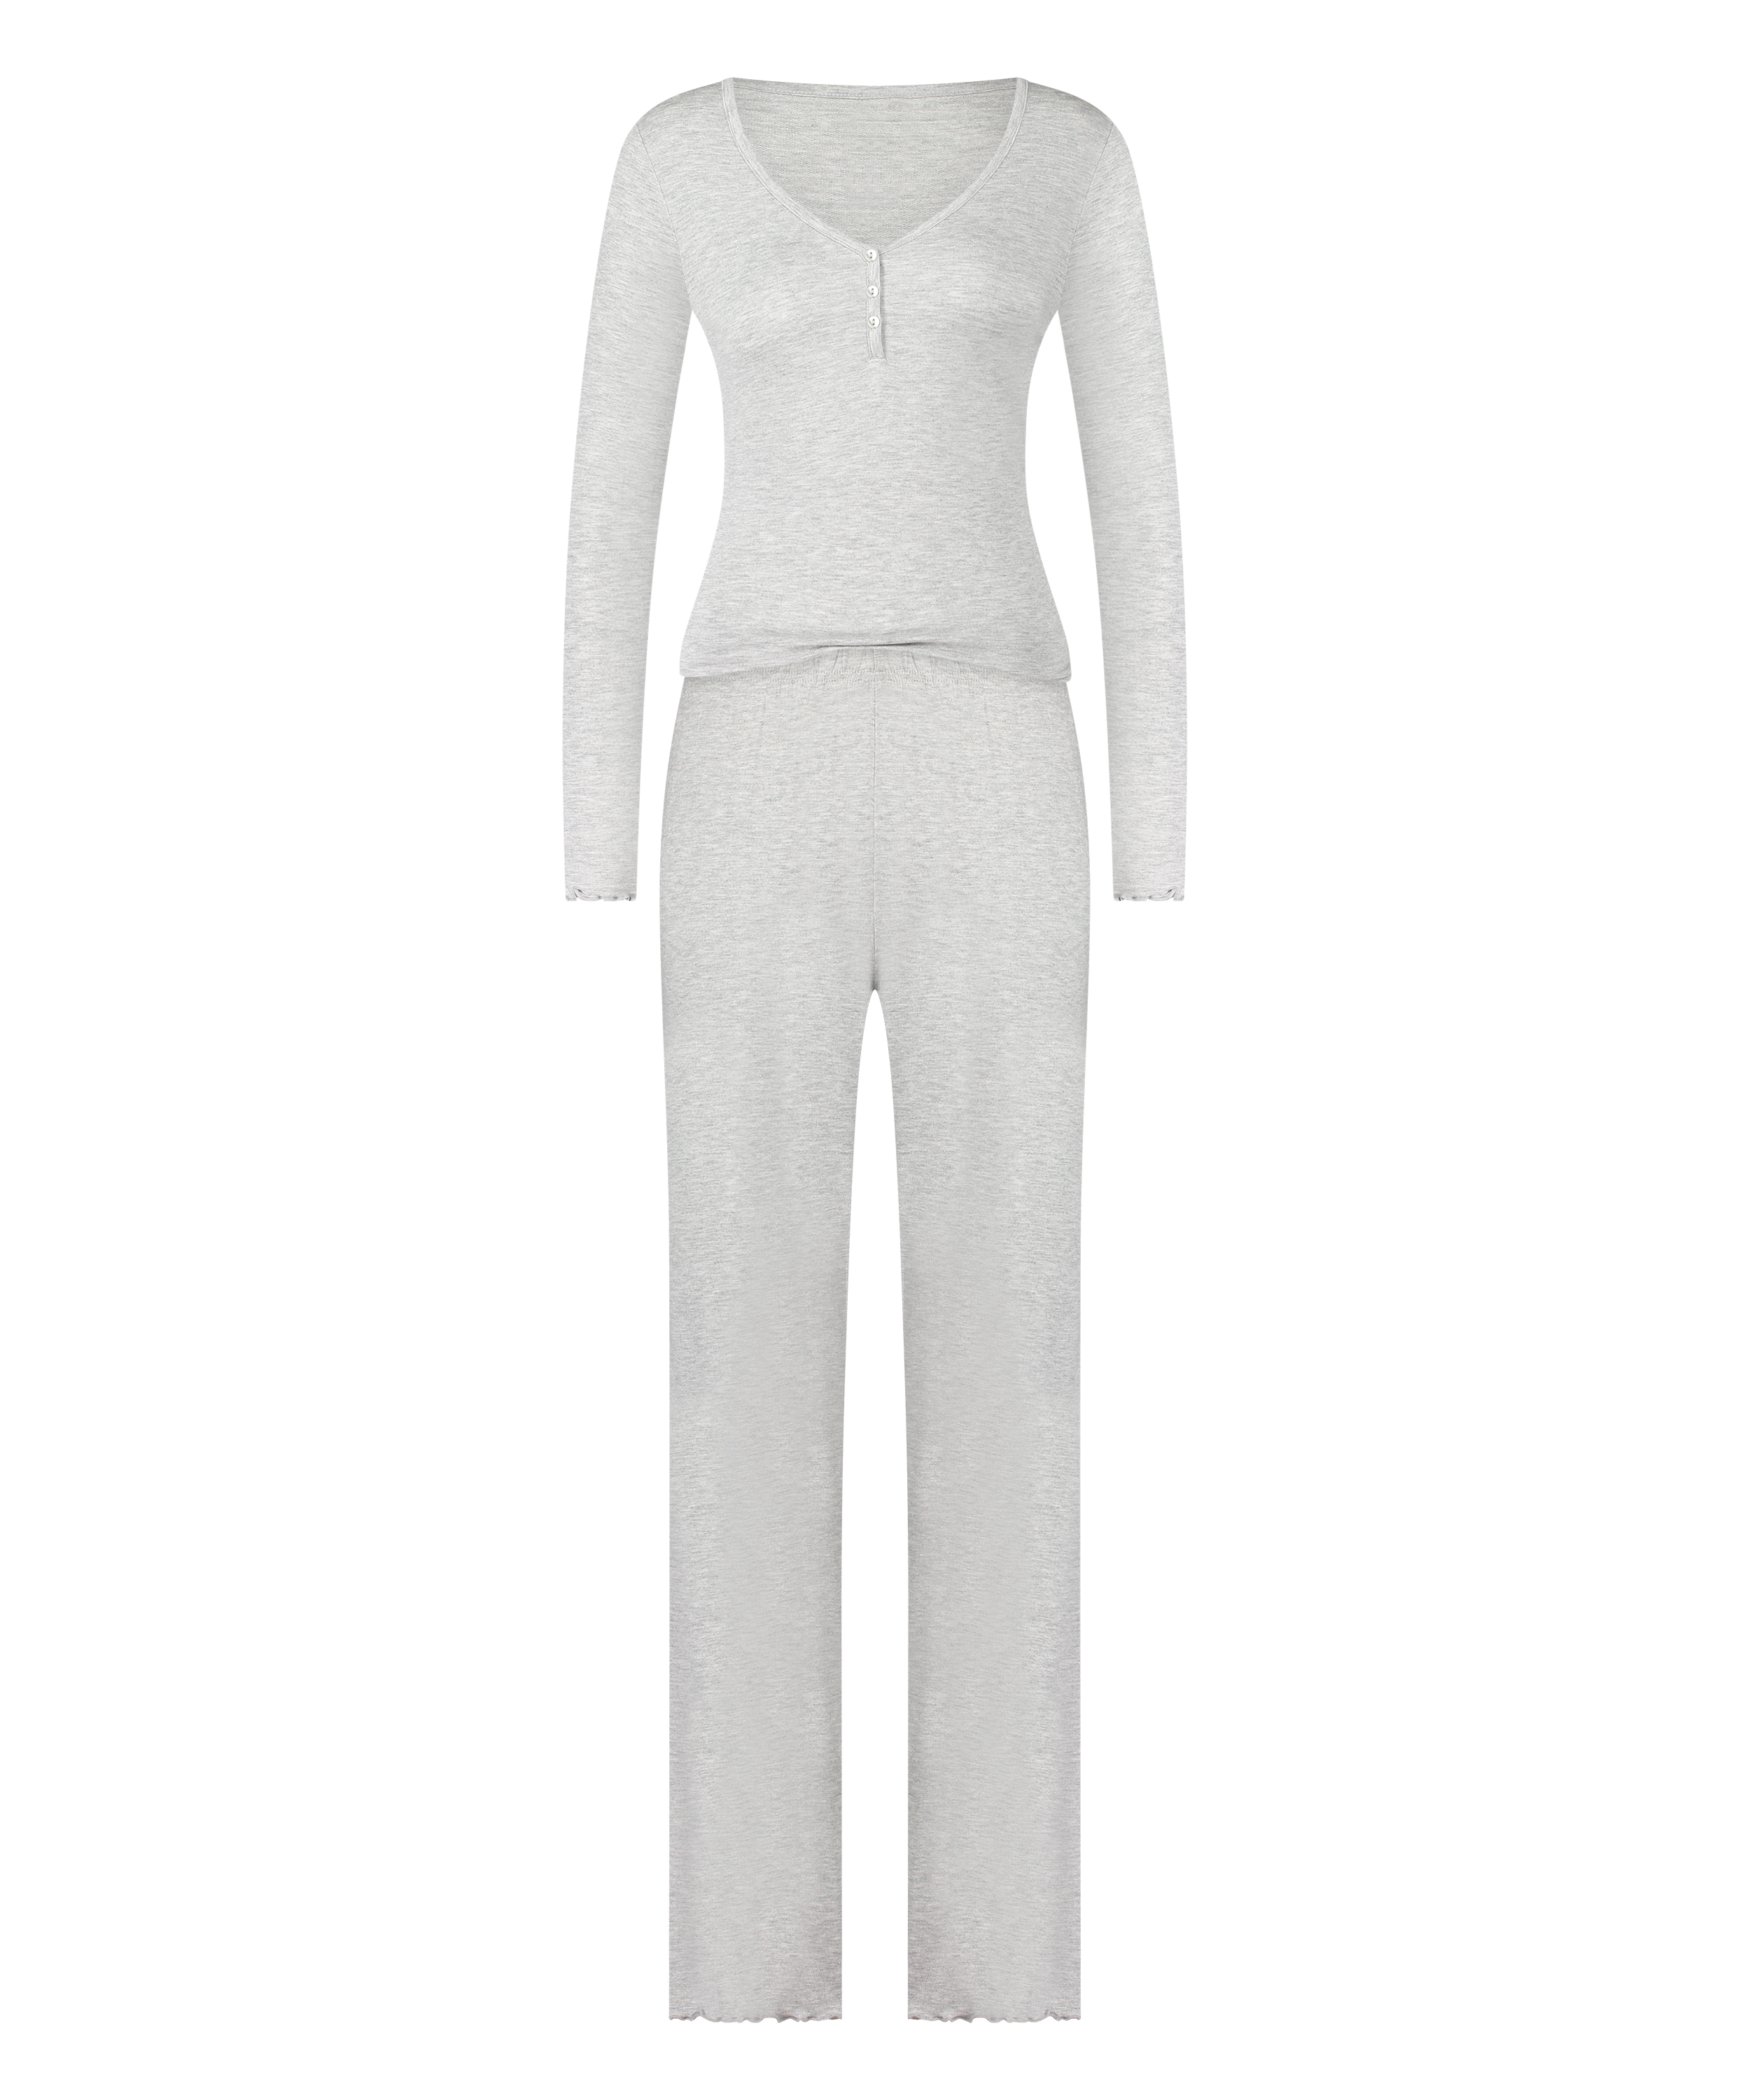 Pajama Set, Grey, main